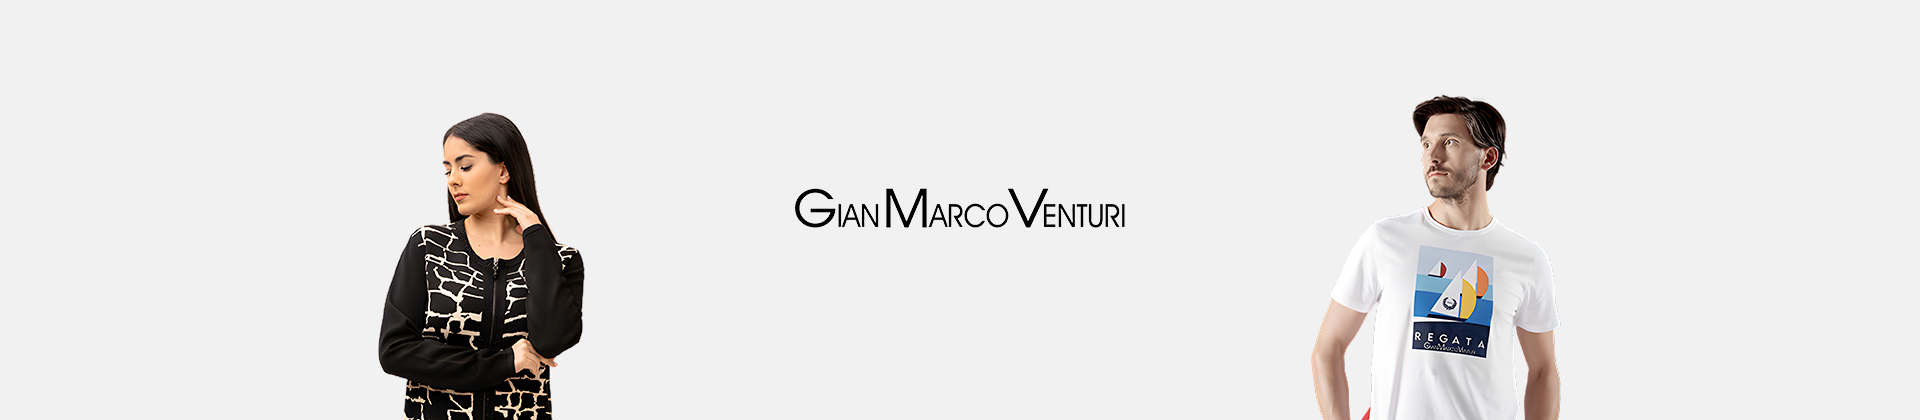 Gian Marco Venturi borse gioiello on line!